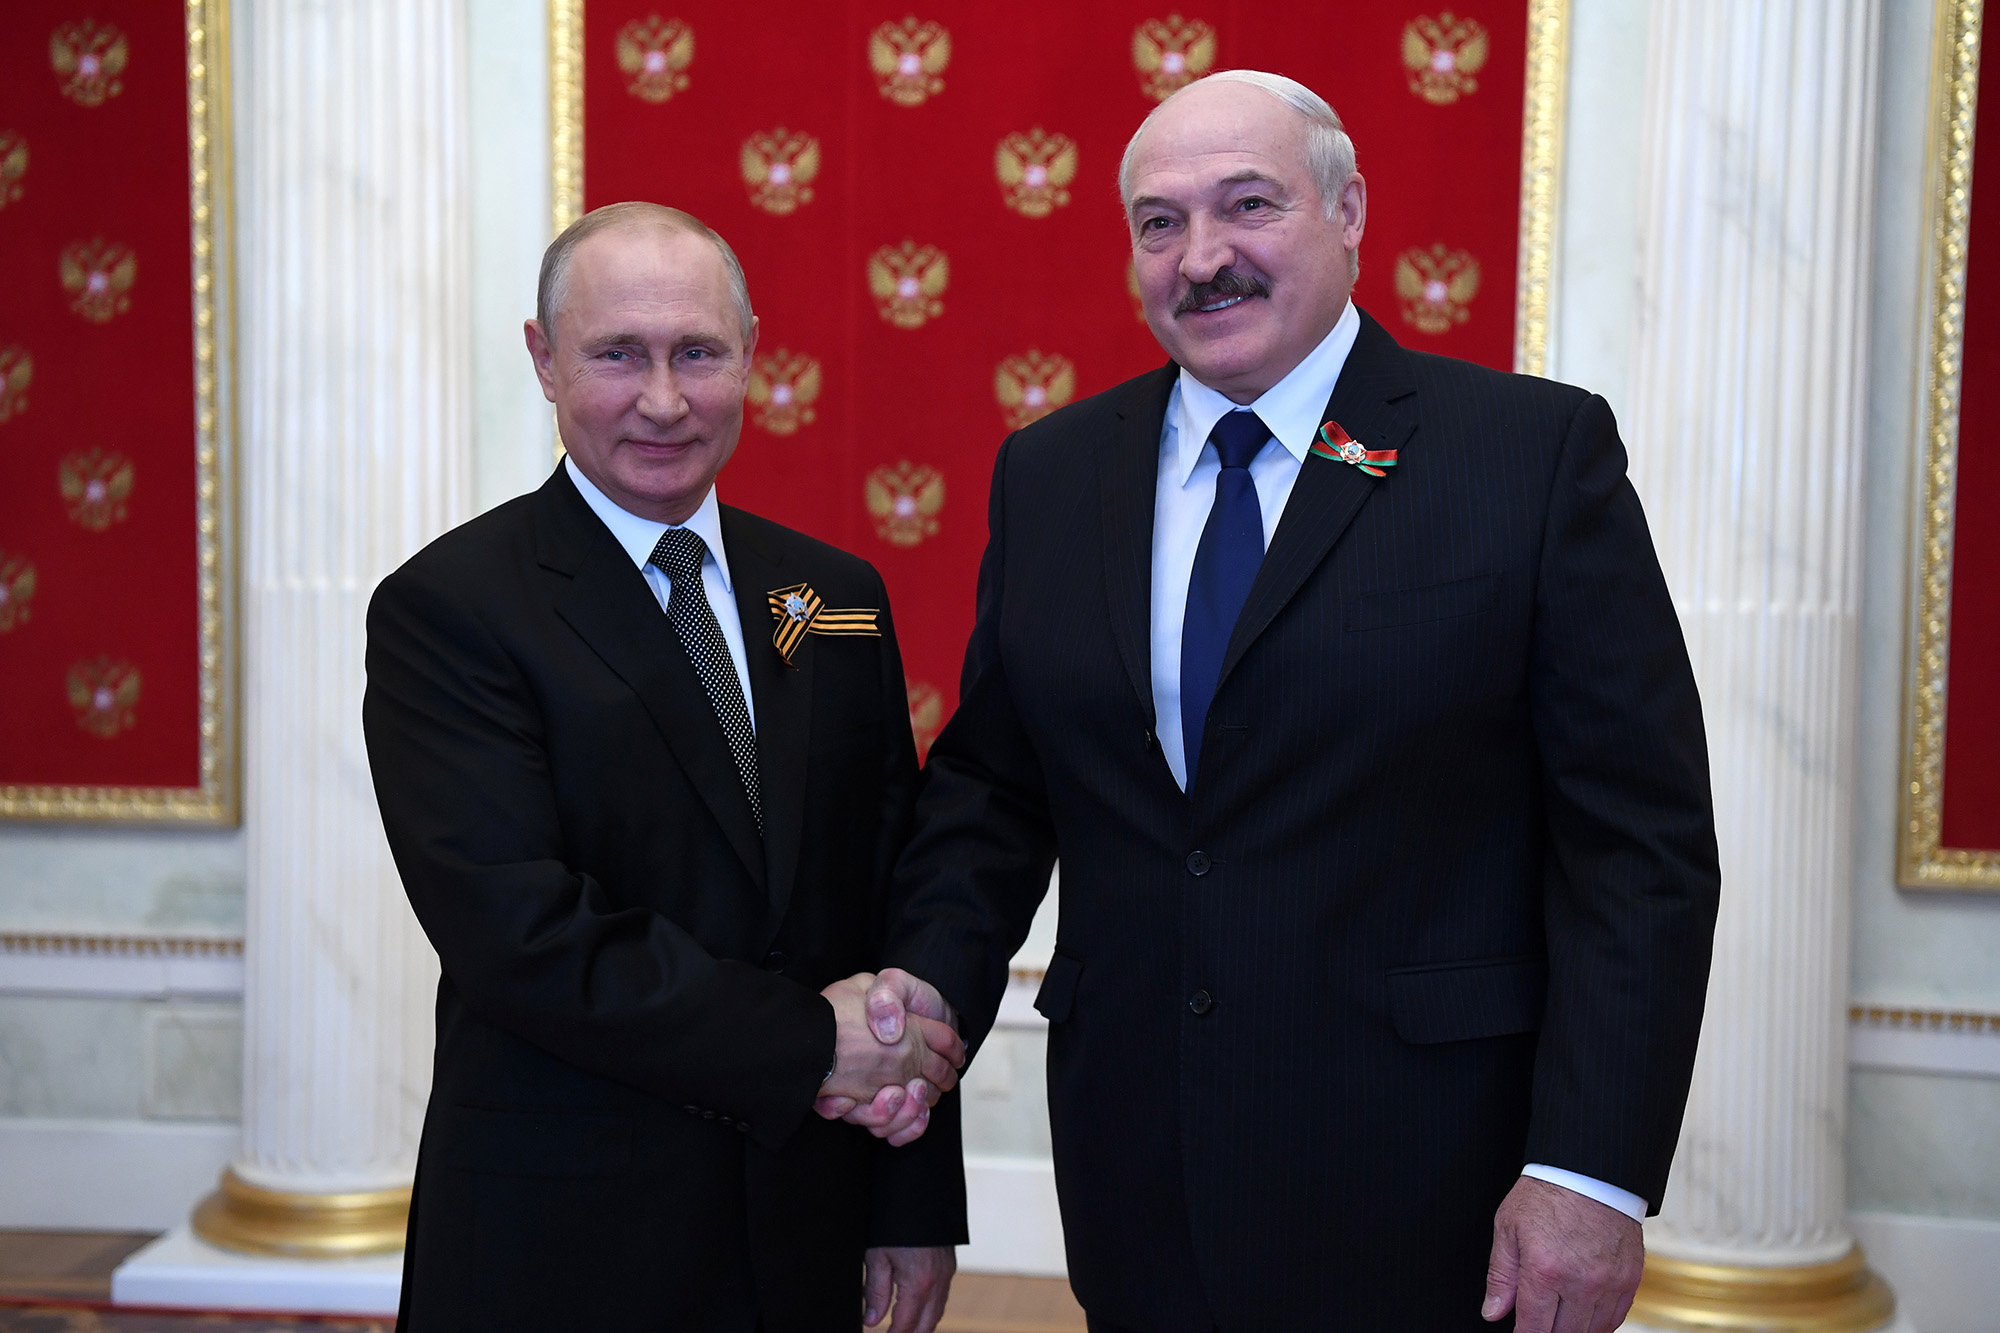 Na ceremonii, kde se konal nový trajekt, Putin poskytl podrobnosti o telefonátu s vůdcem Běloruska a zmínil se o výstupu do Baltského moře.